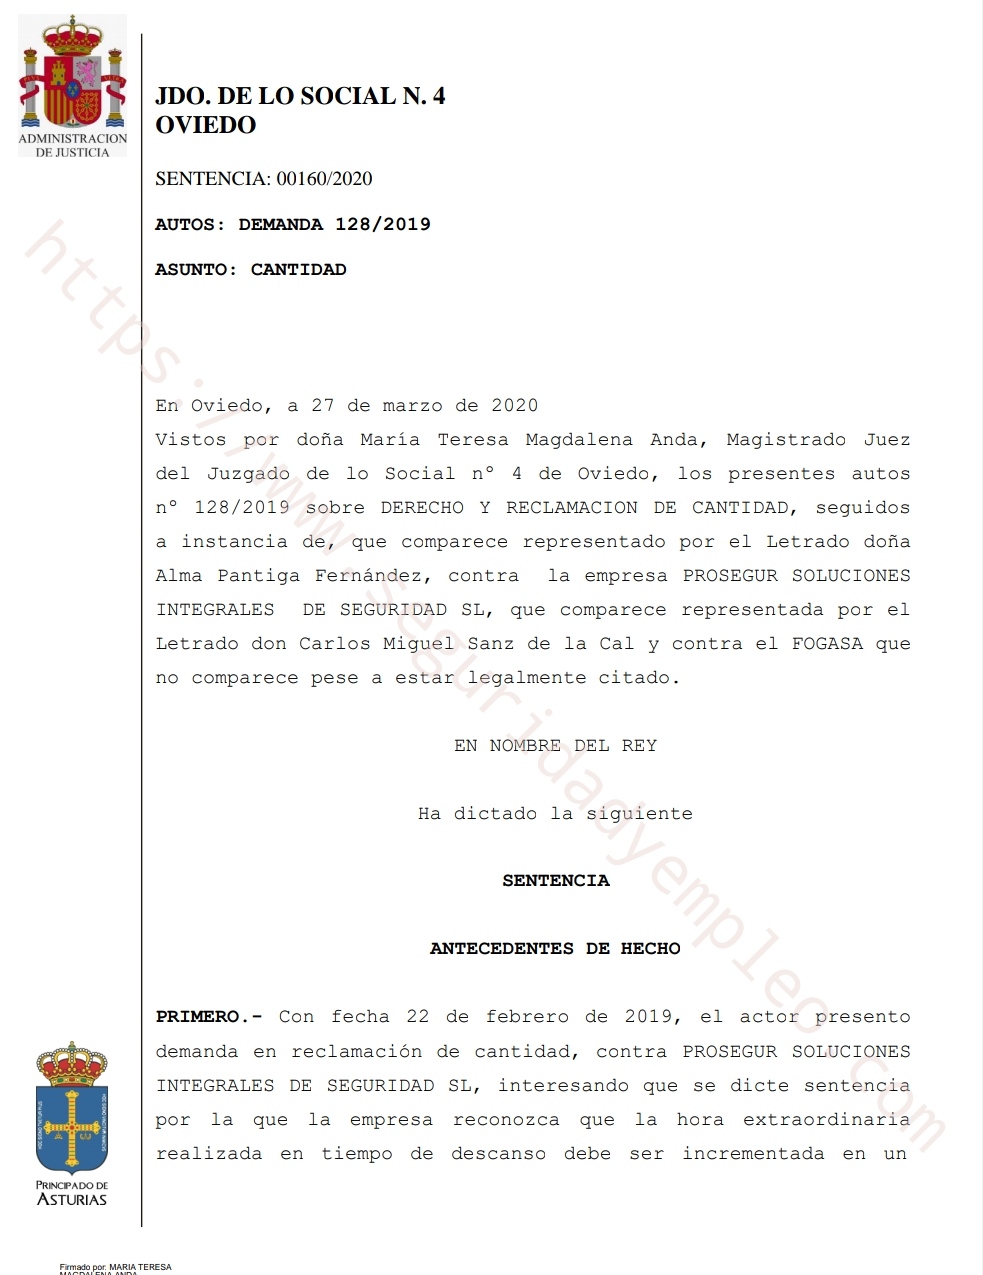 [DESCARGAR SENTENCIA] Un juzgado de lo social de Oviedo condena a Prosegur a pagar a  un vigilante un  incremento del 75 % en la hora extraordinaria trabajada durante su tiempo de descanso